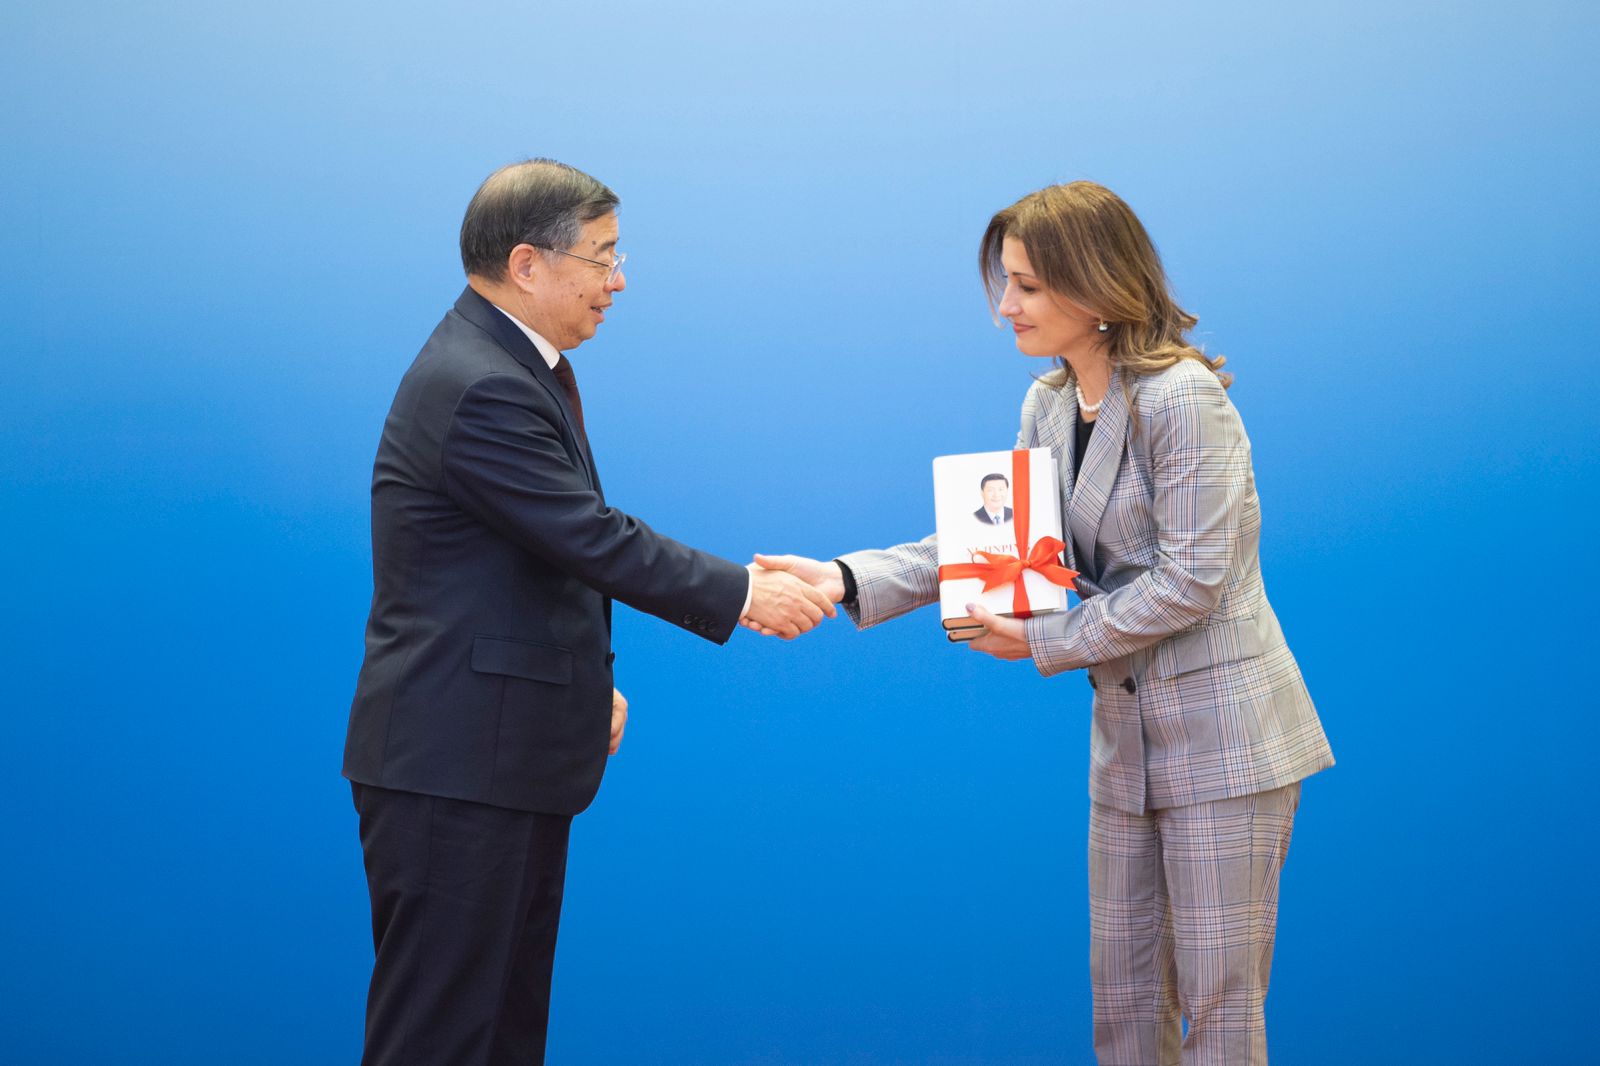 Rajmonda Hida gjatë ceremonisë së nënshkrimit të kontratës me palën kineze për botimin e librit Qeverisja e Kinës të presidentit Xi